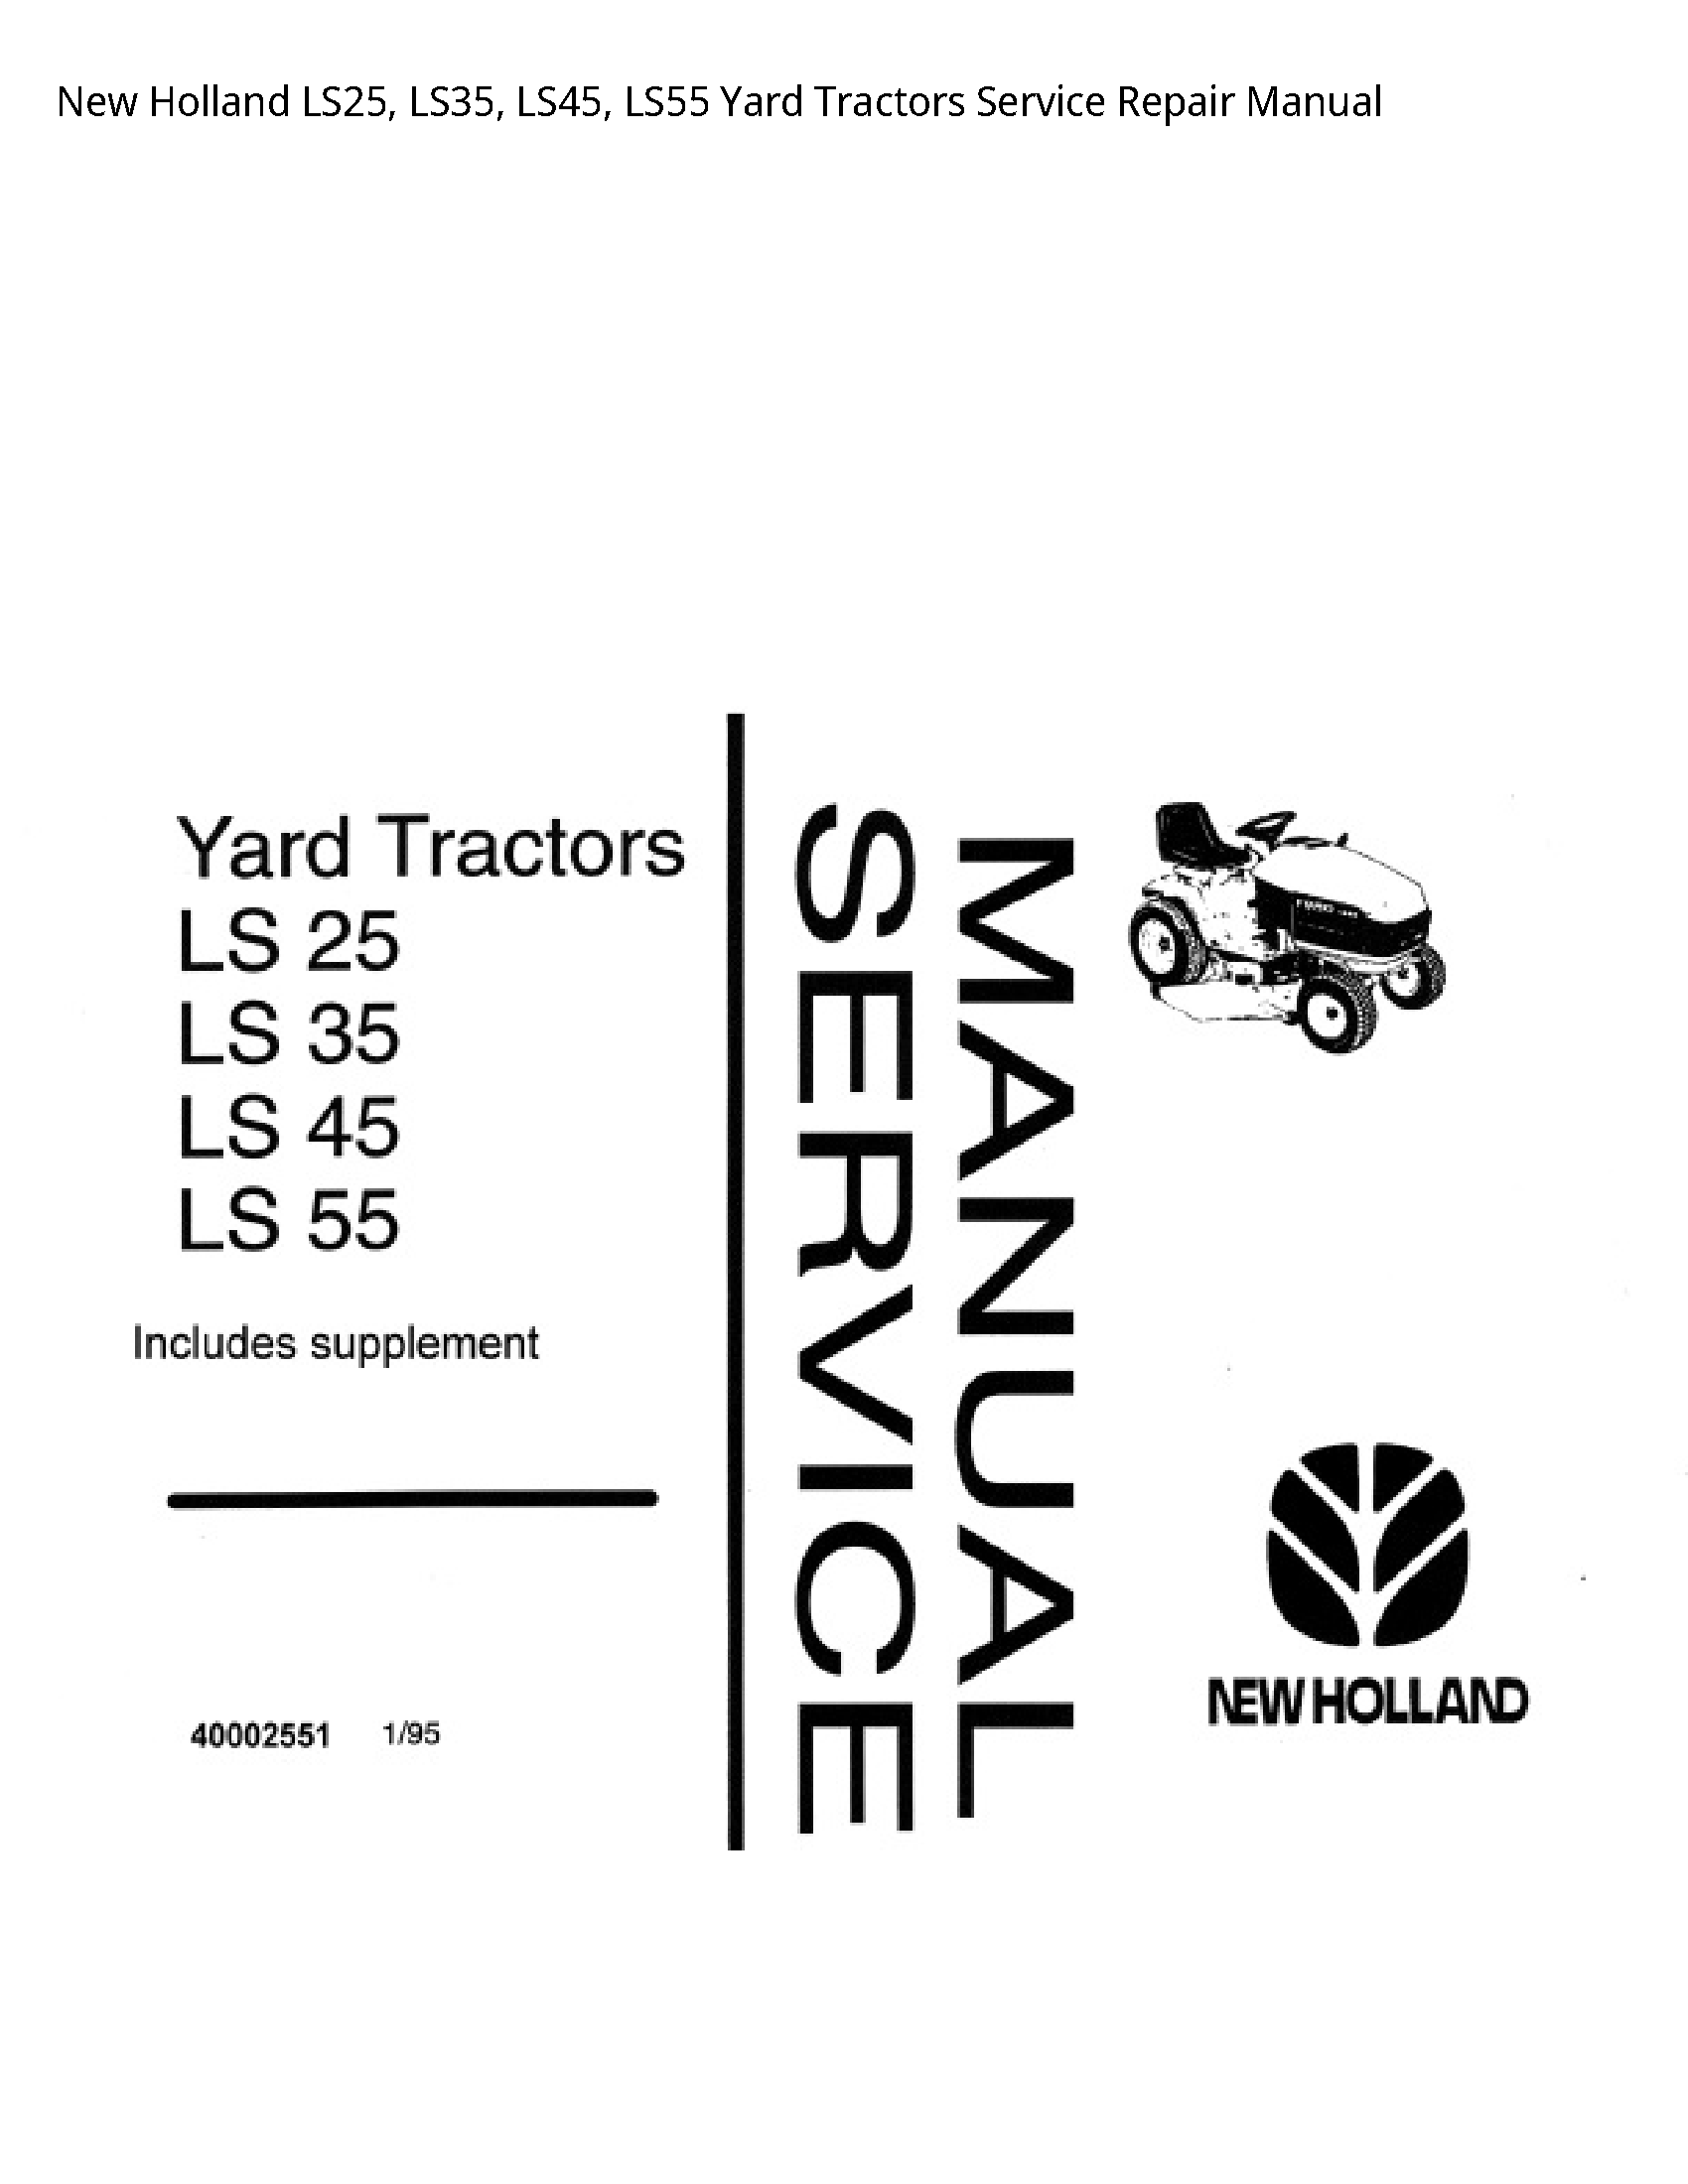 New Holland LS25 Yard Tractors manual